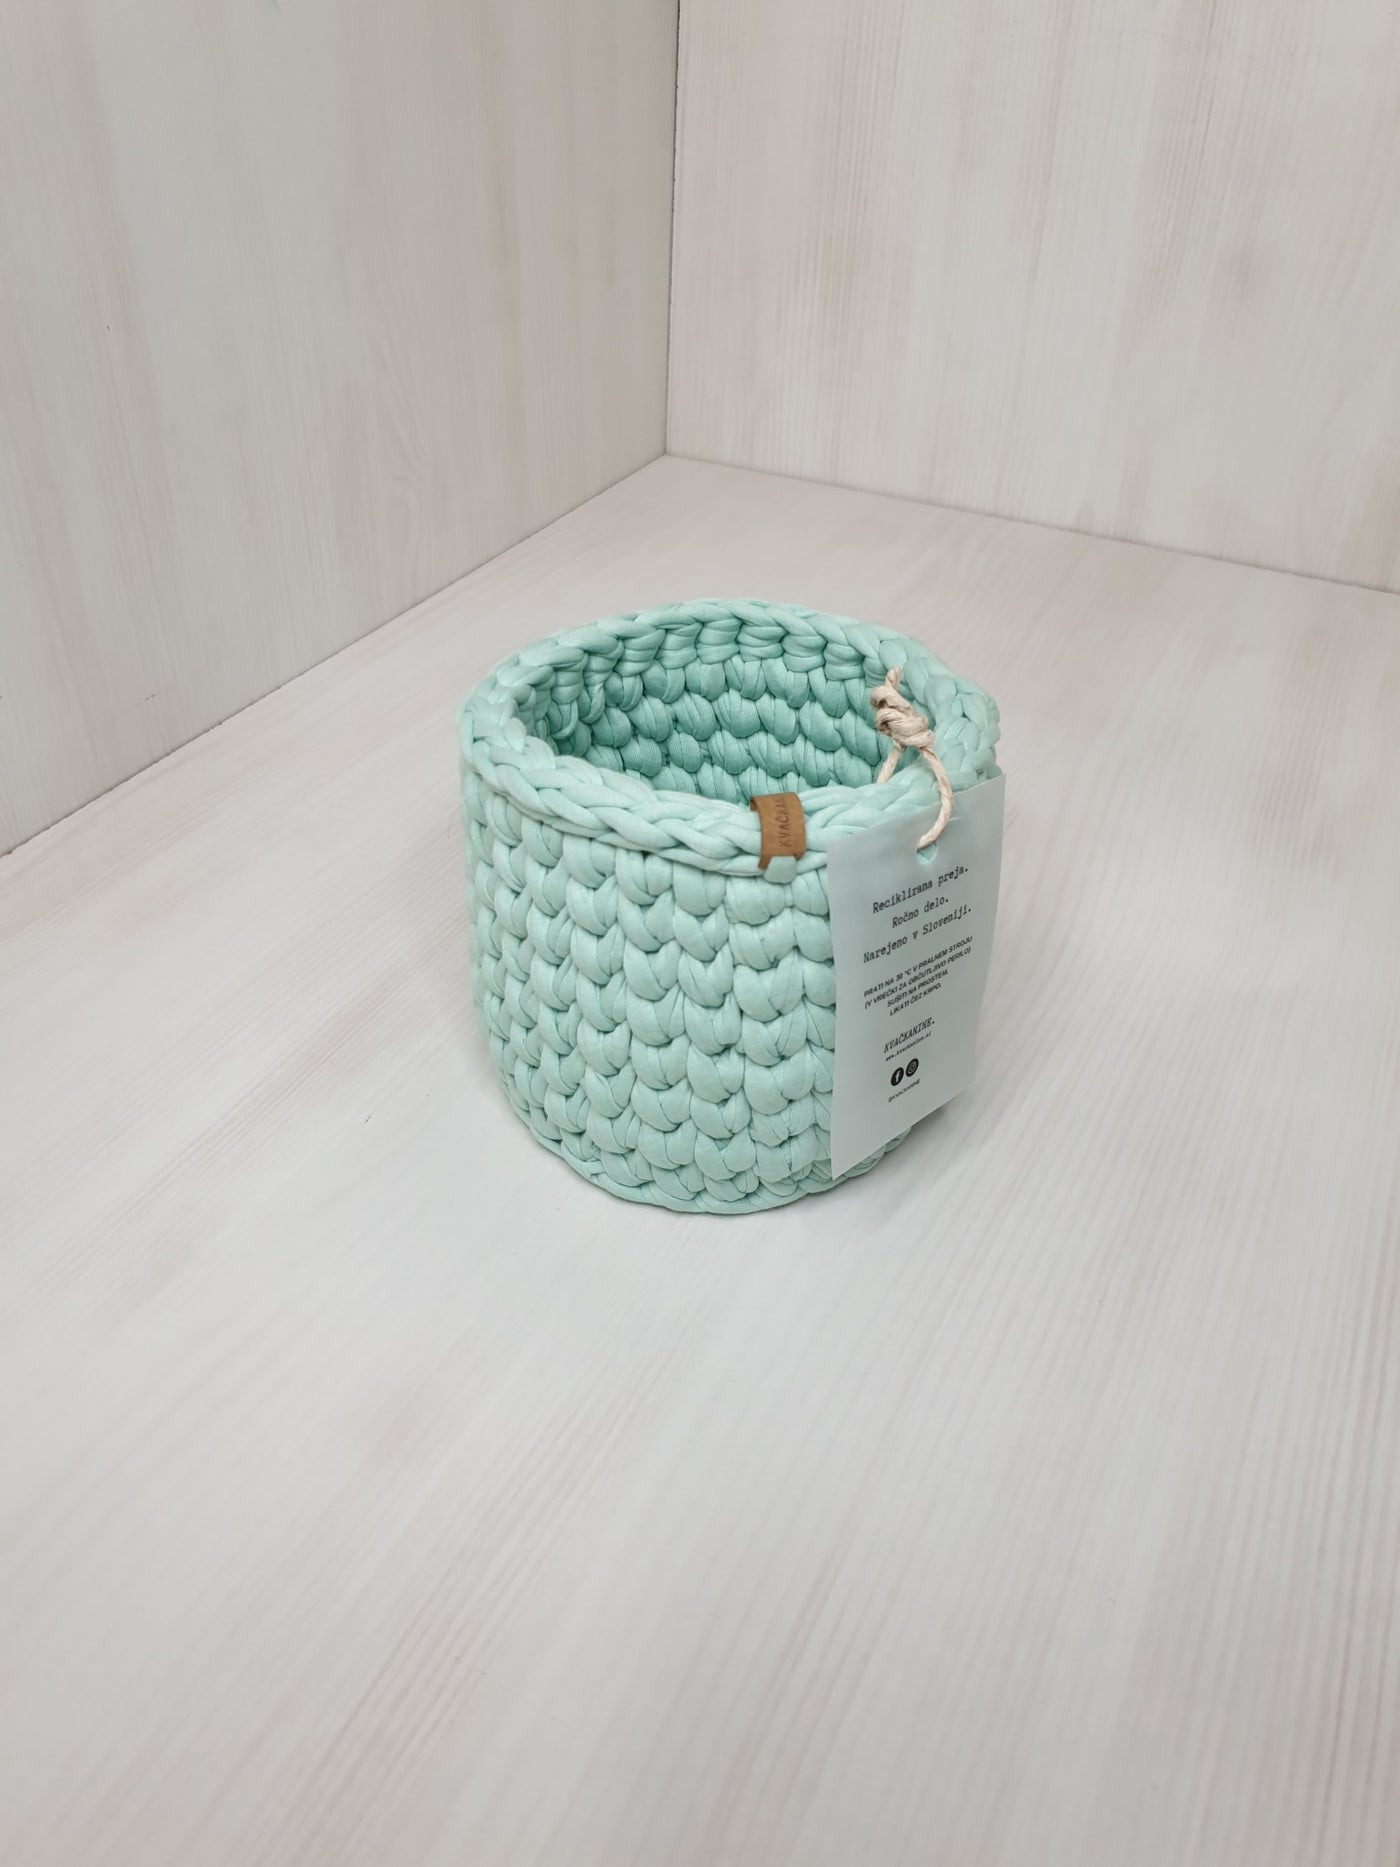 Crochet Basket - Basic